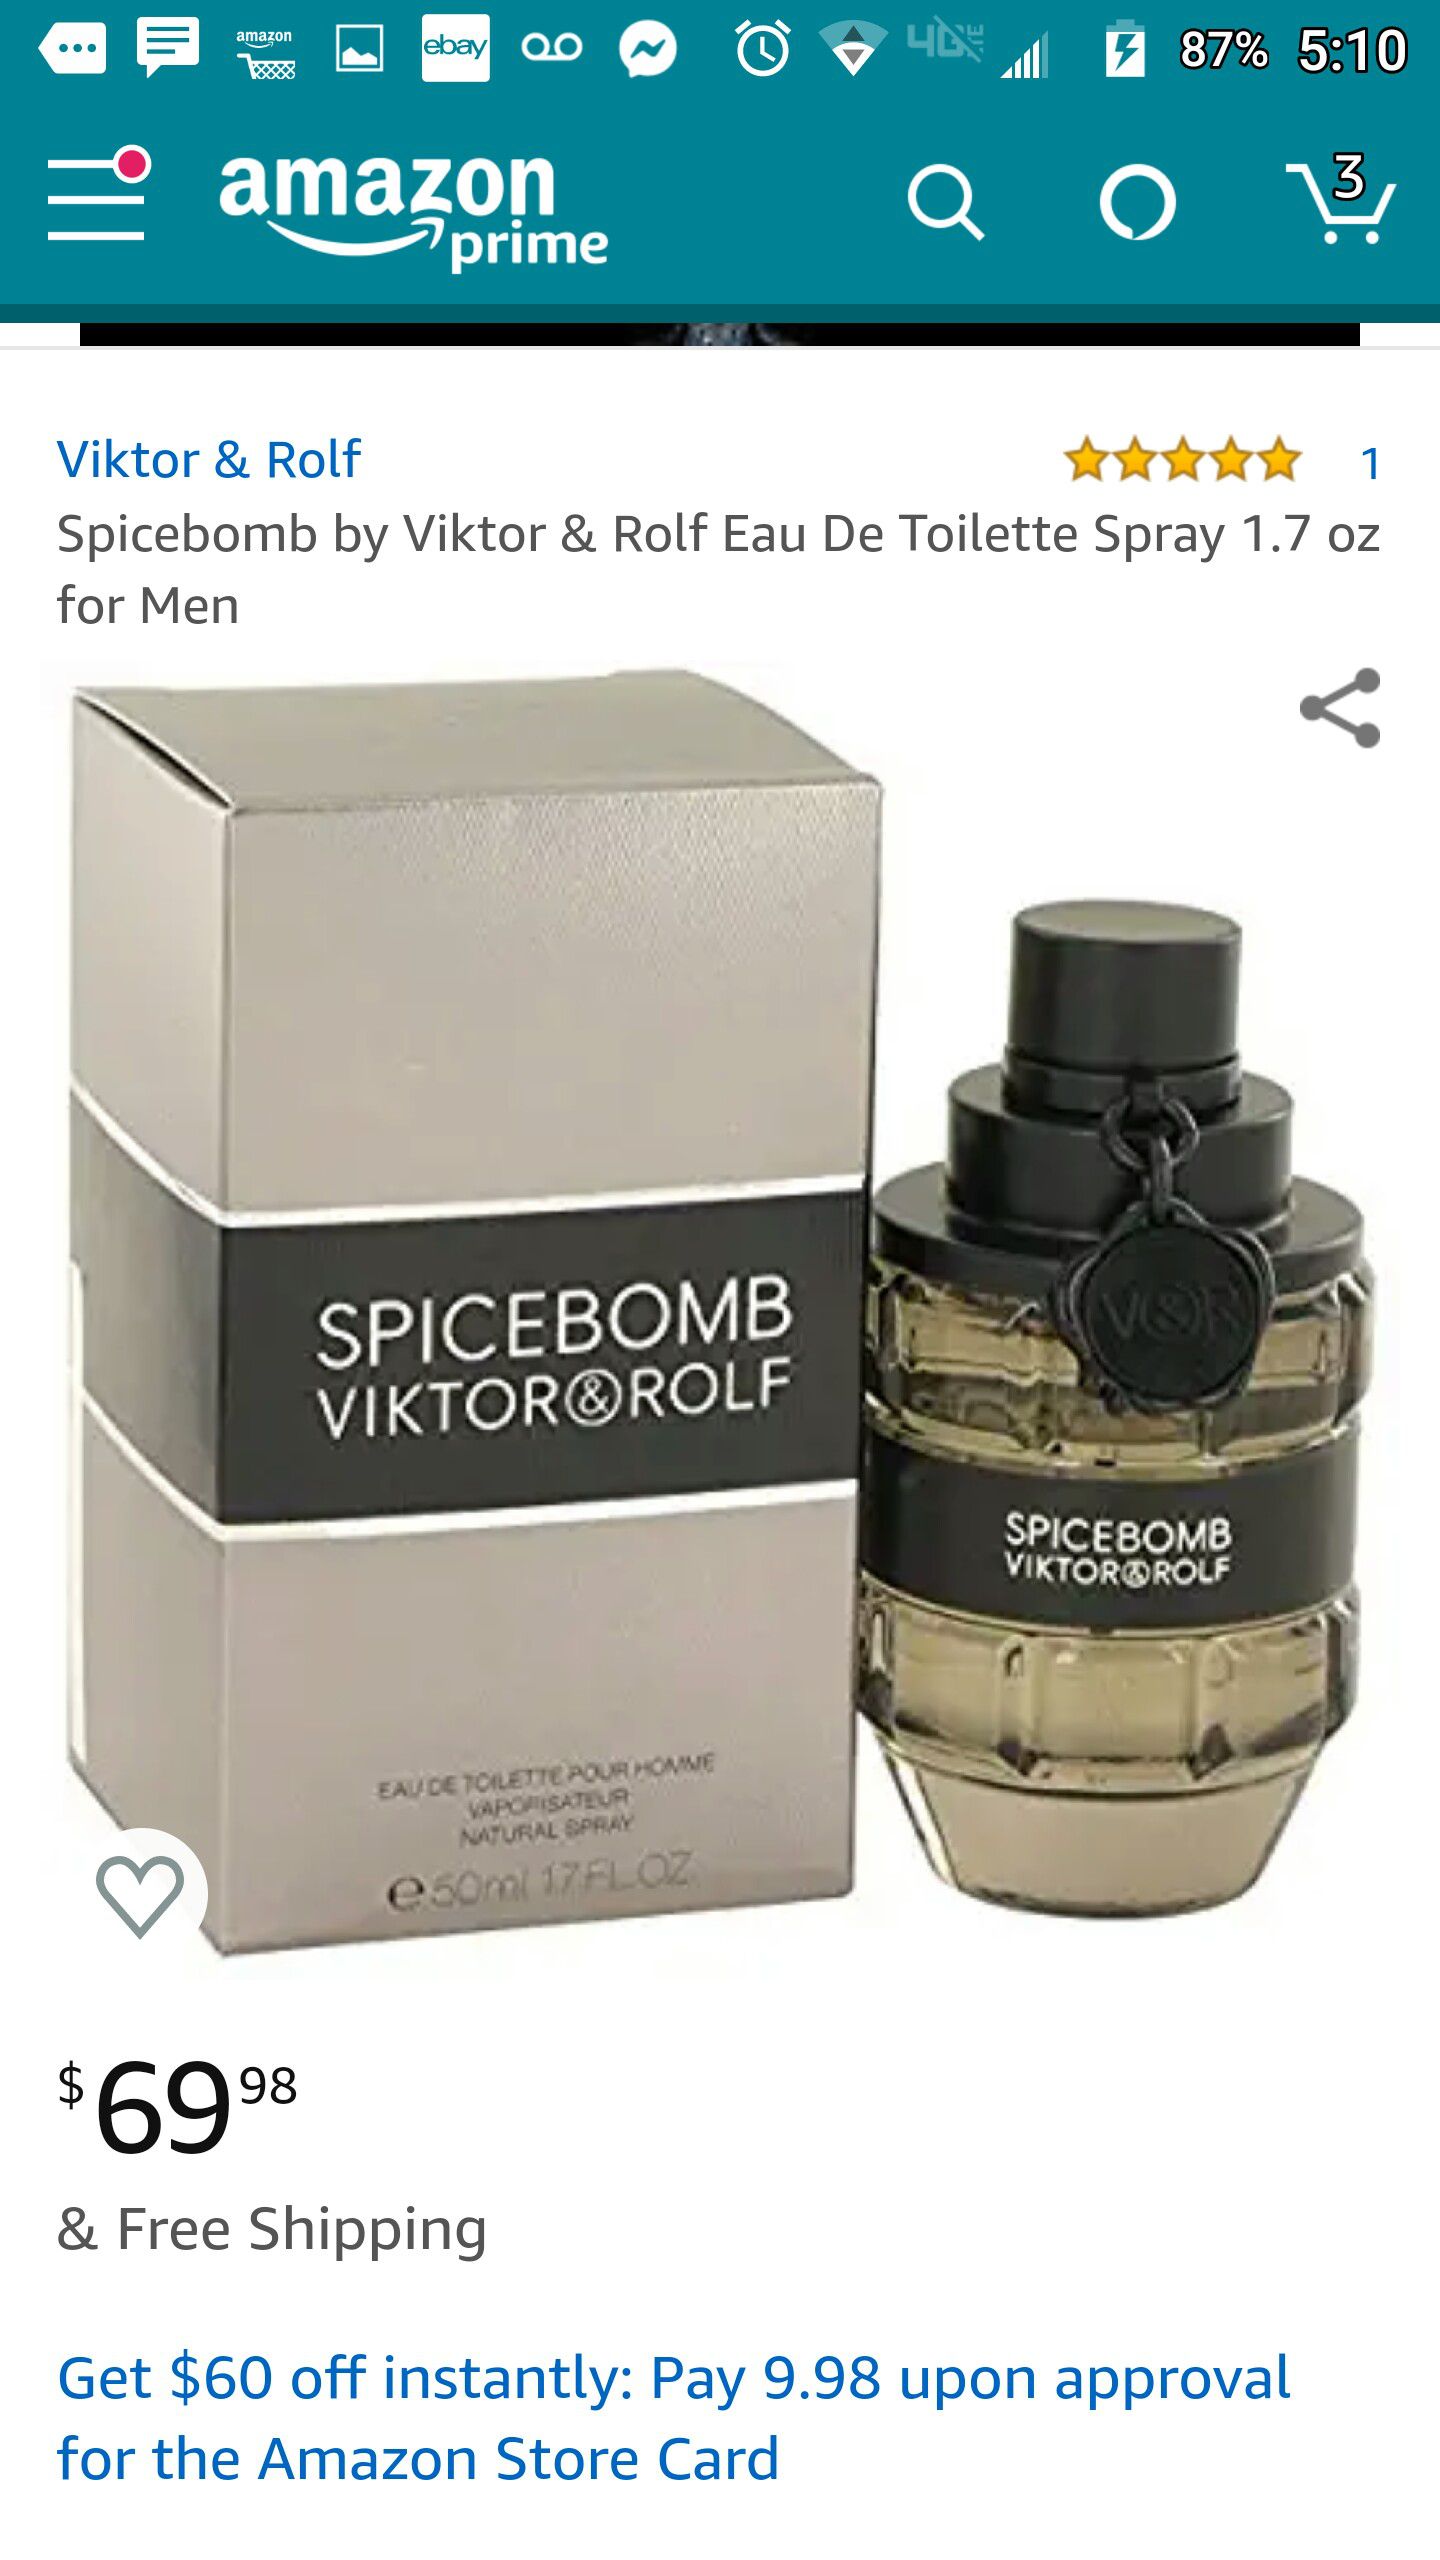 SpiceBomb by Viktor & Rolf Men's Fragrance 3/4 full 1.7oz bottle